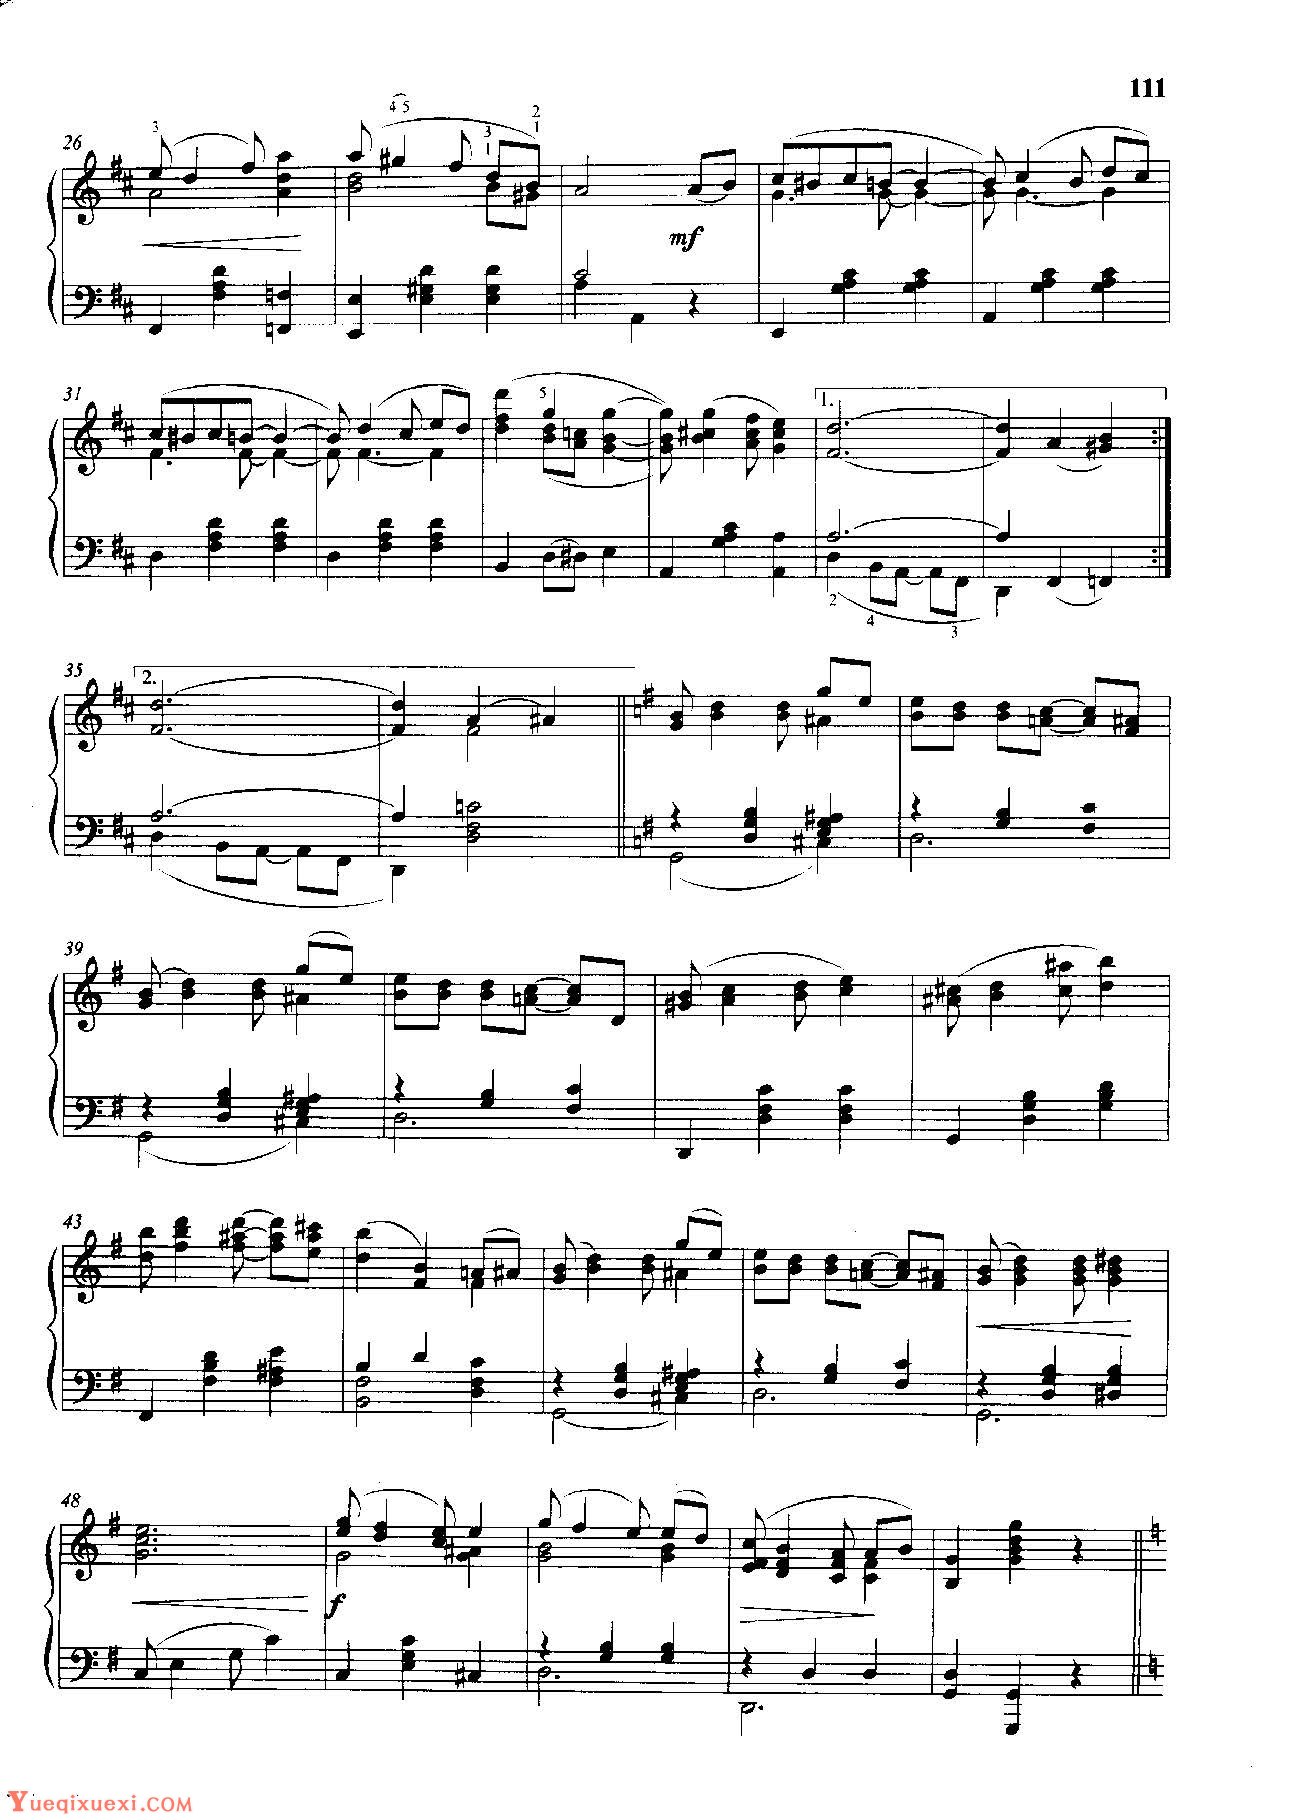 雷格泰姆钢琴乐谱《欢悦时光》雷格泰姆之王斯科特·乔普林